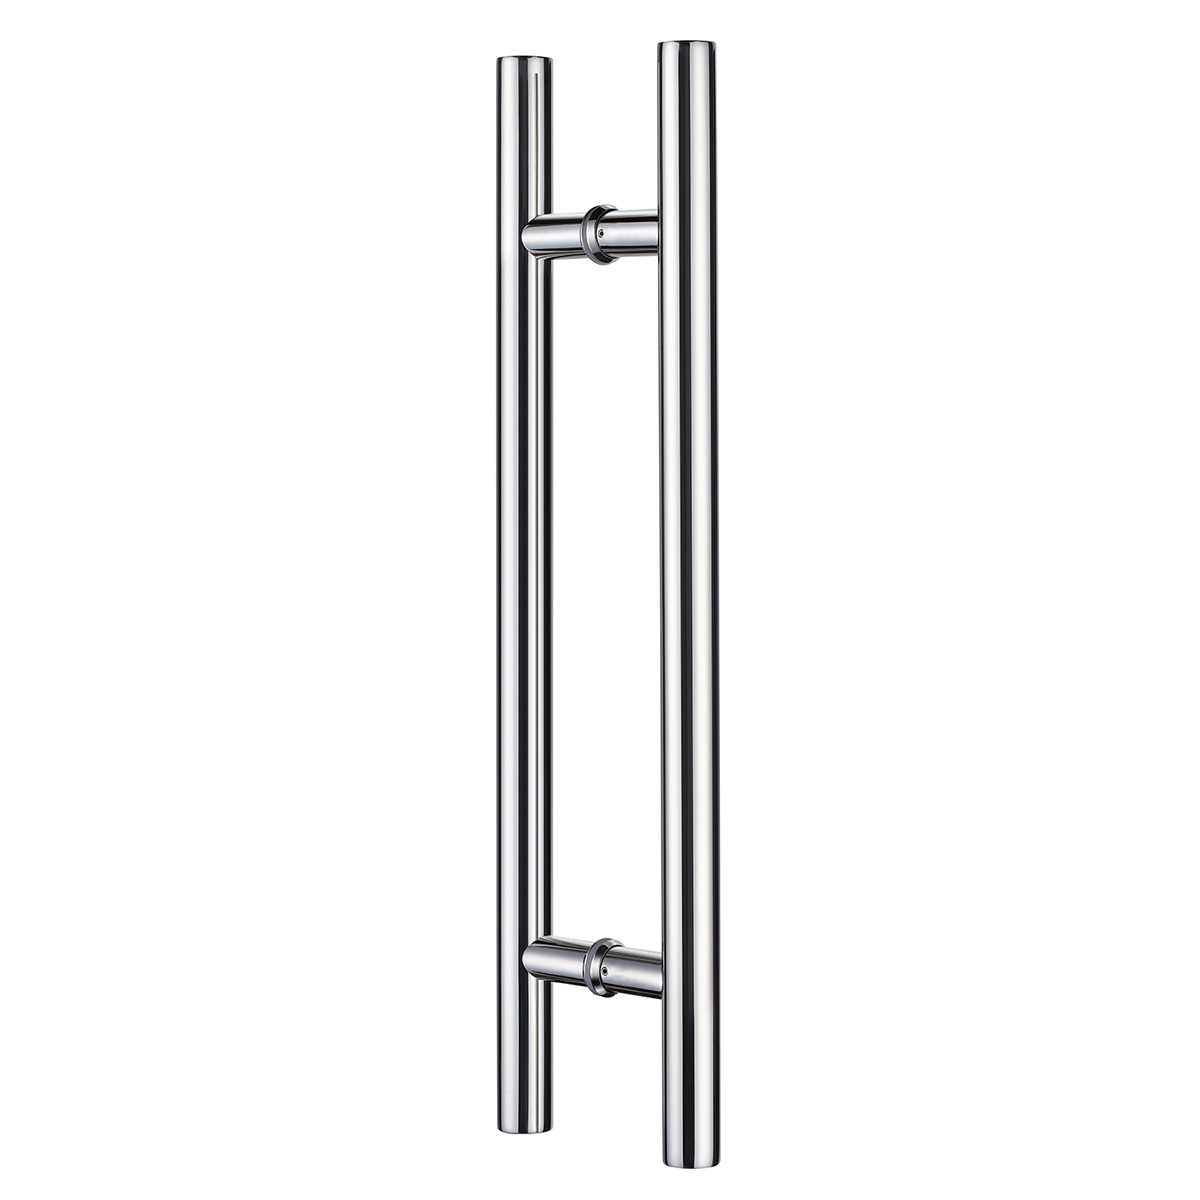 Commercial 304 Stainless Steel Push Pull Door Handle For Sliding Glass Door, Barn Door Handle For Wood Door, Mirror Polished Chrome Finish